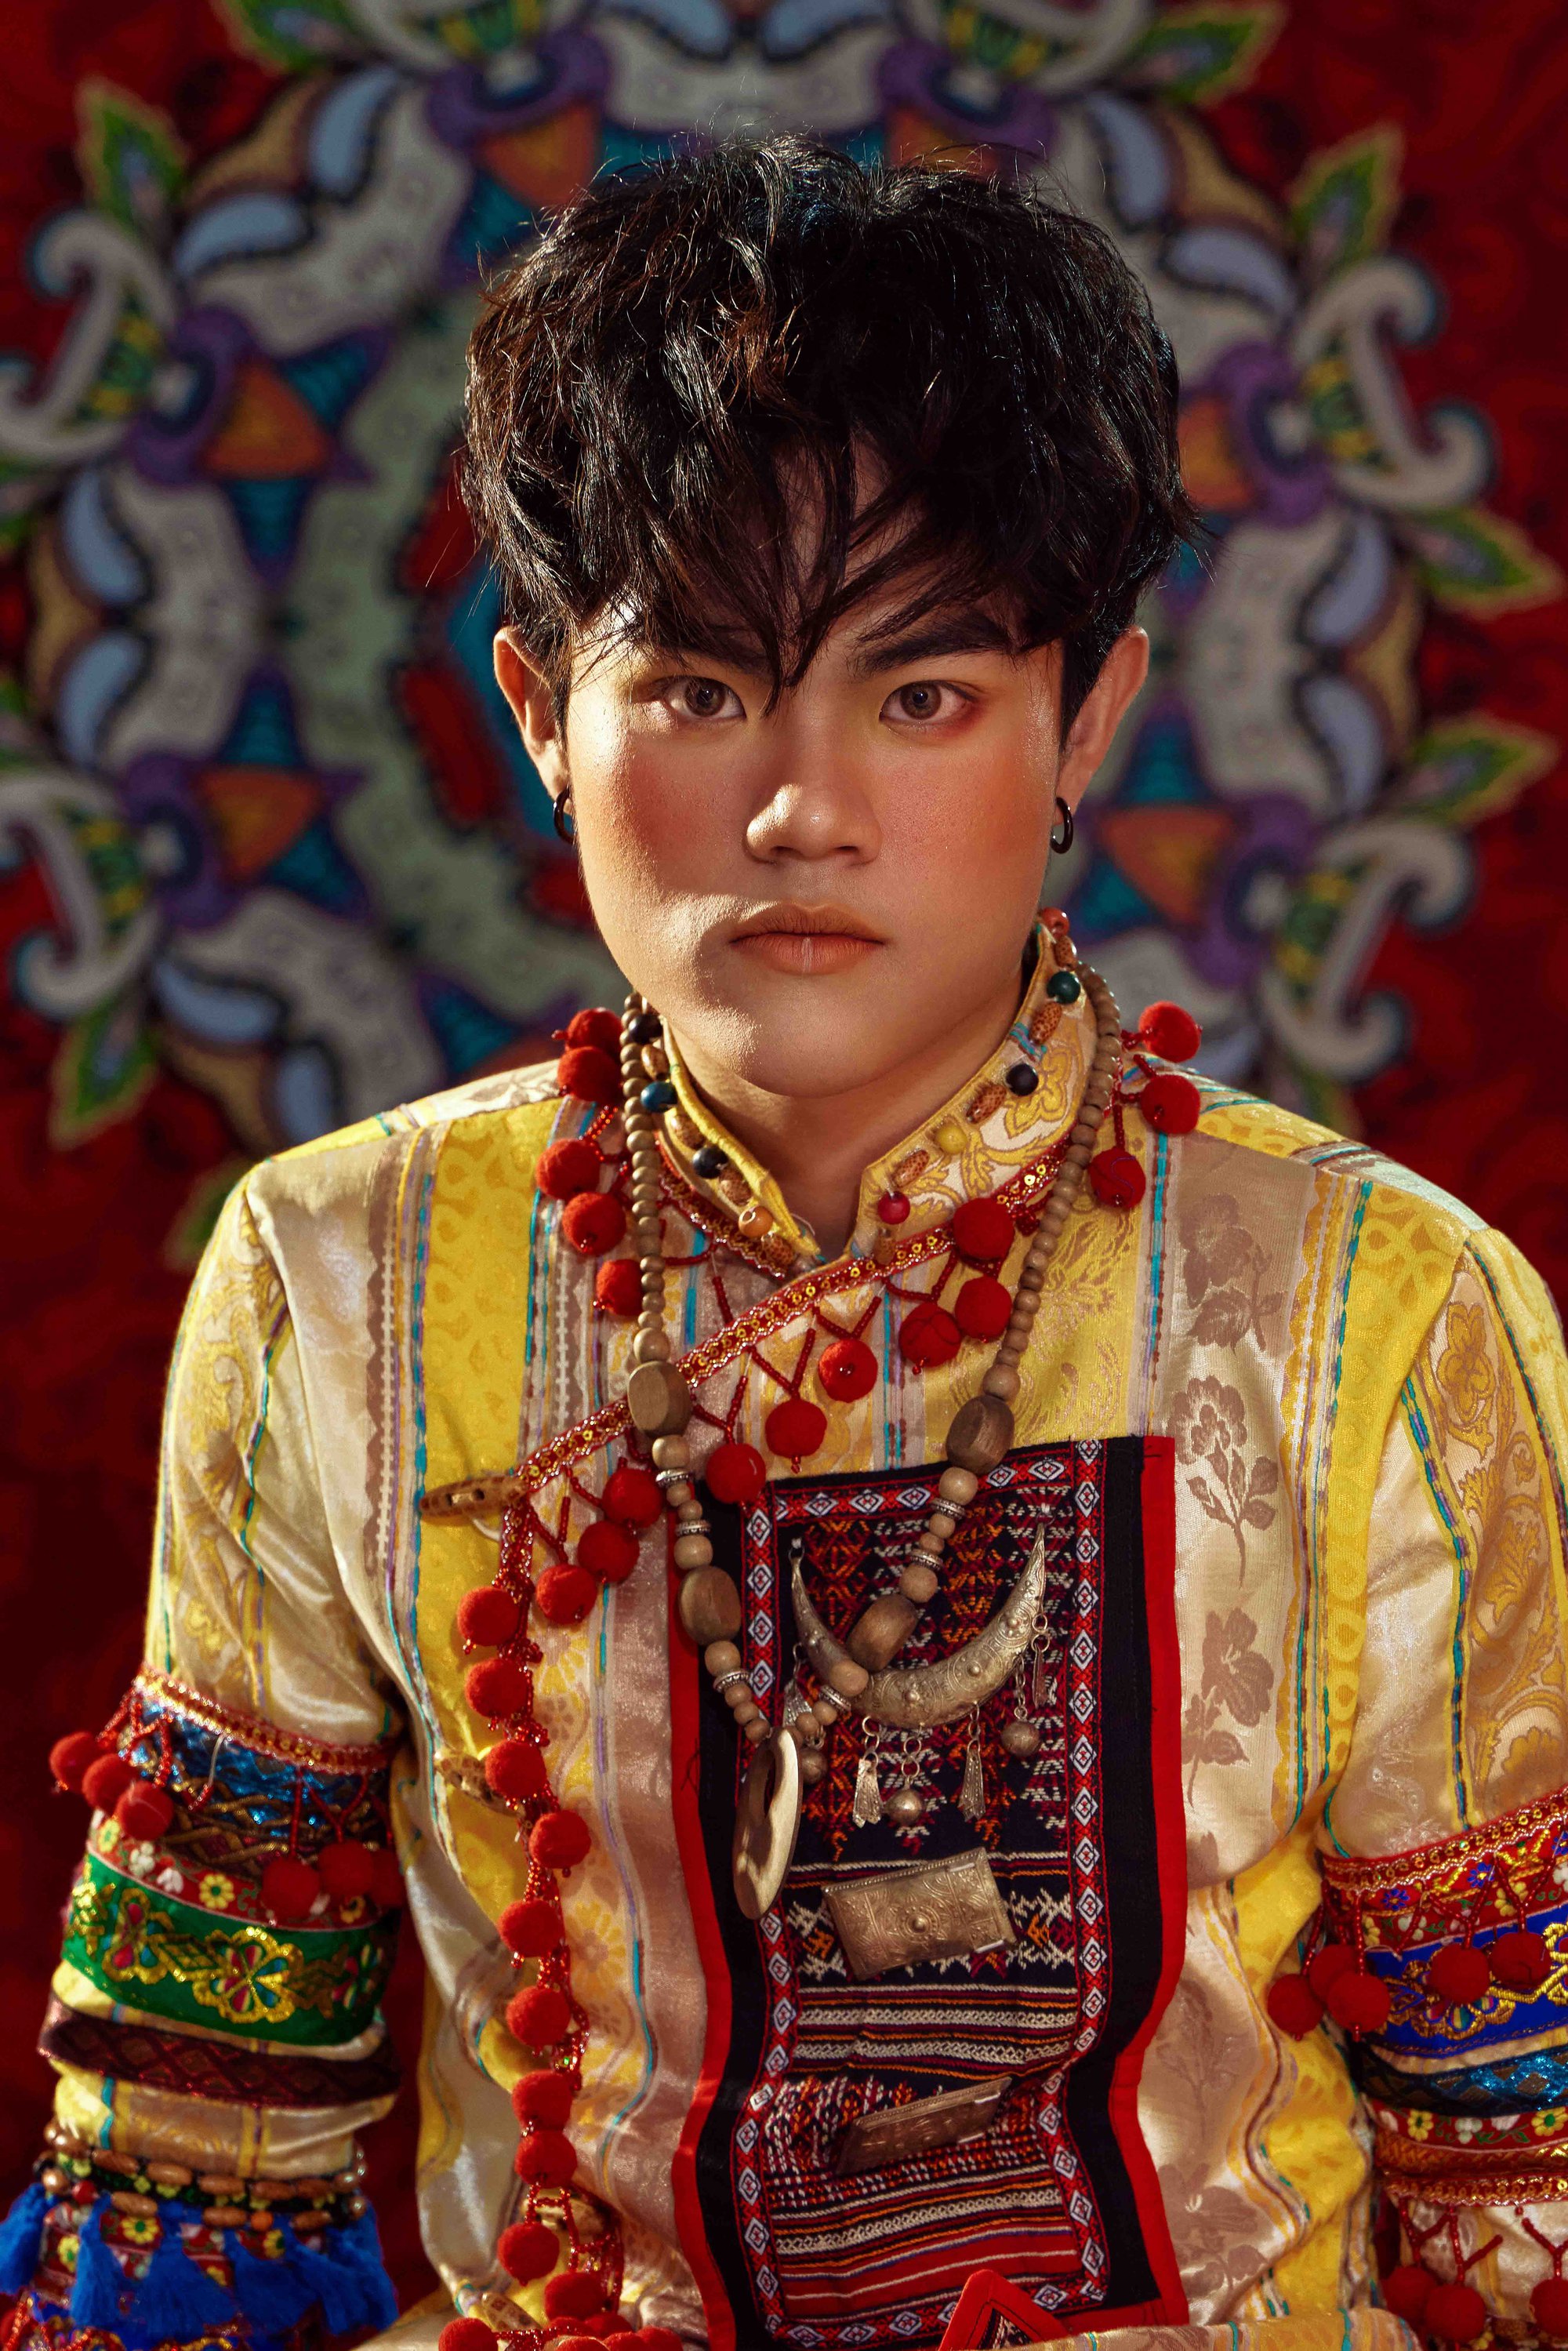 Hoàng tử ảnh quốc tế Quang Anh lạ lẫm trong bộ ảnh áo dài kết hợp với phong cách 'Bohemian' - Ảnh 7.